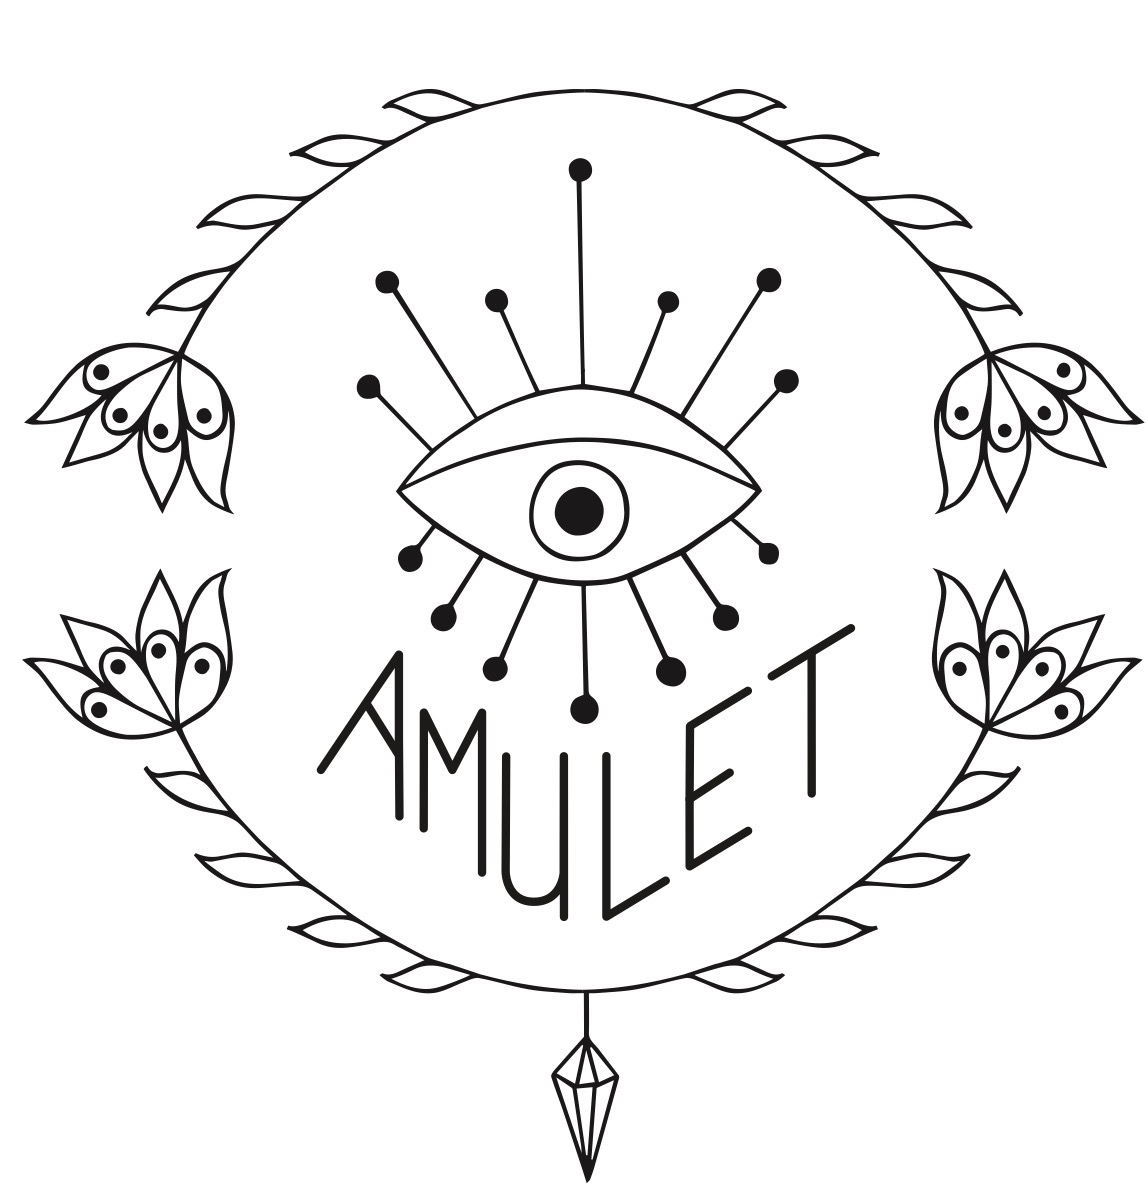 AmuLet_logo_fleurs